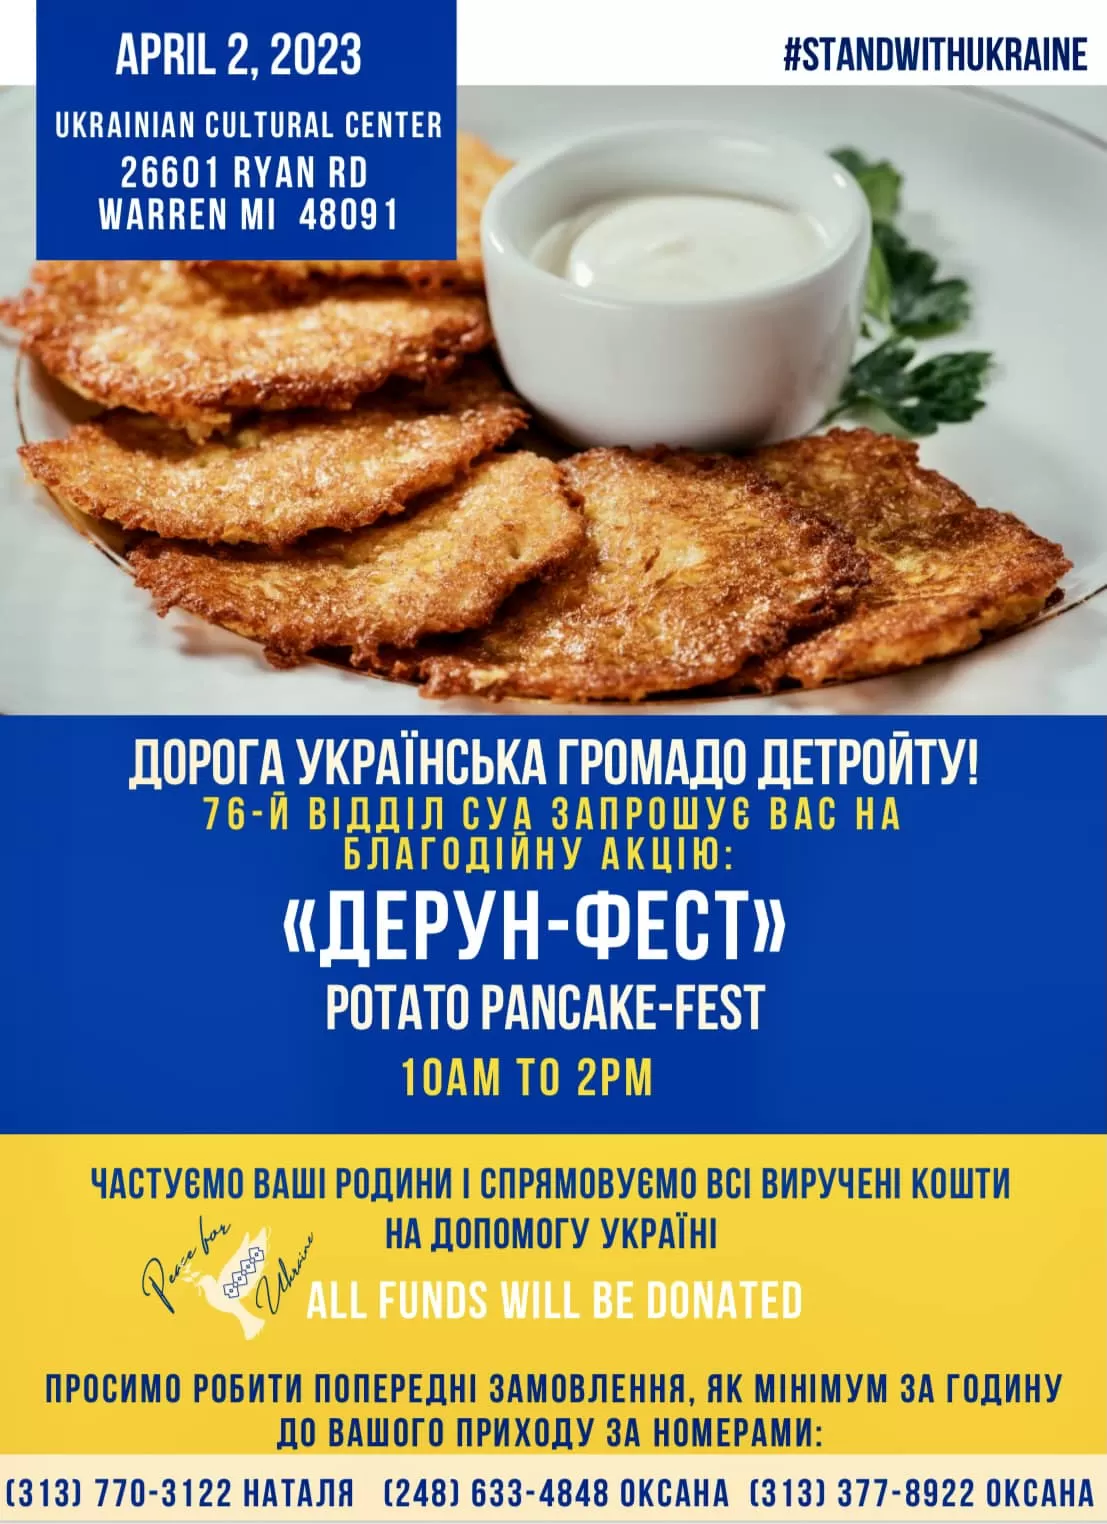 Дерун-Фест- Potato Pancake Fest